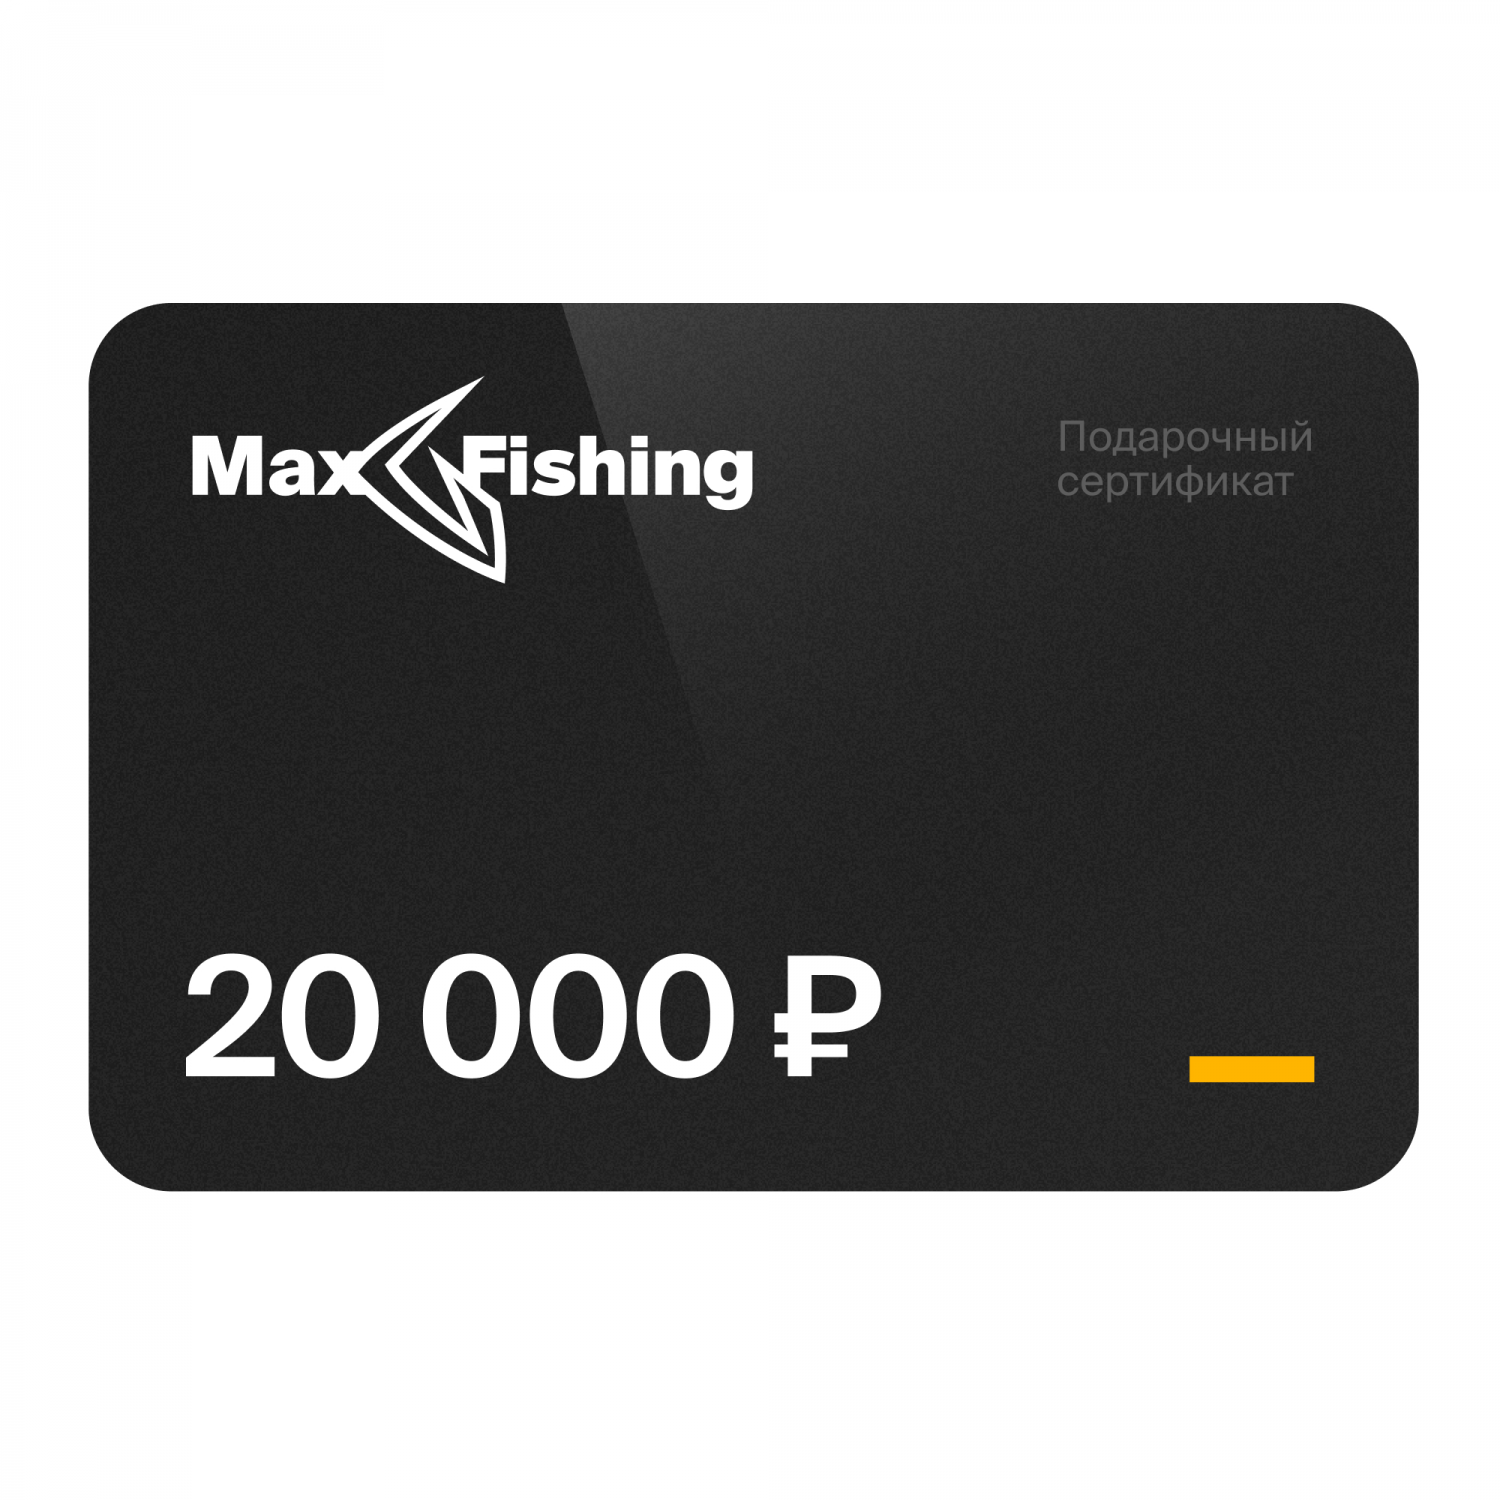 Подарочный сертификат MaxFishing 20 000 ₽ виртуальный подарочный сертификат 3 000